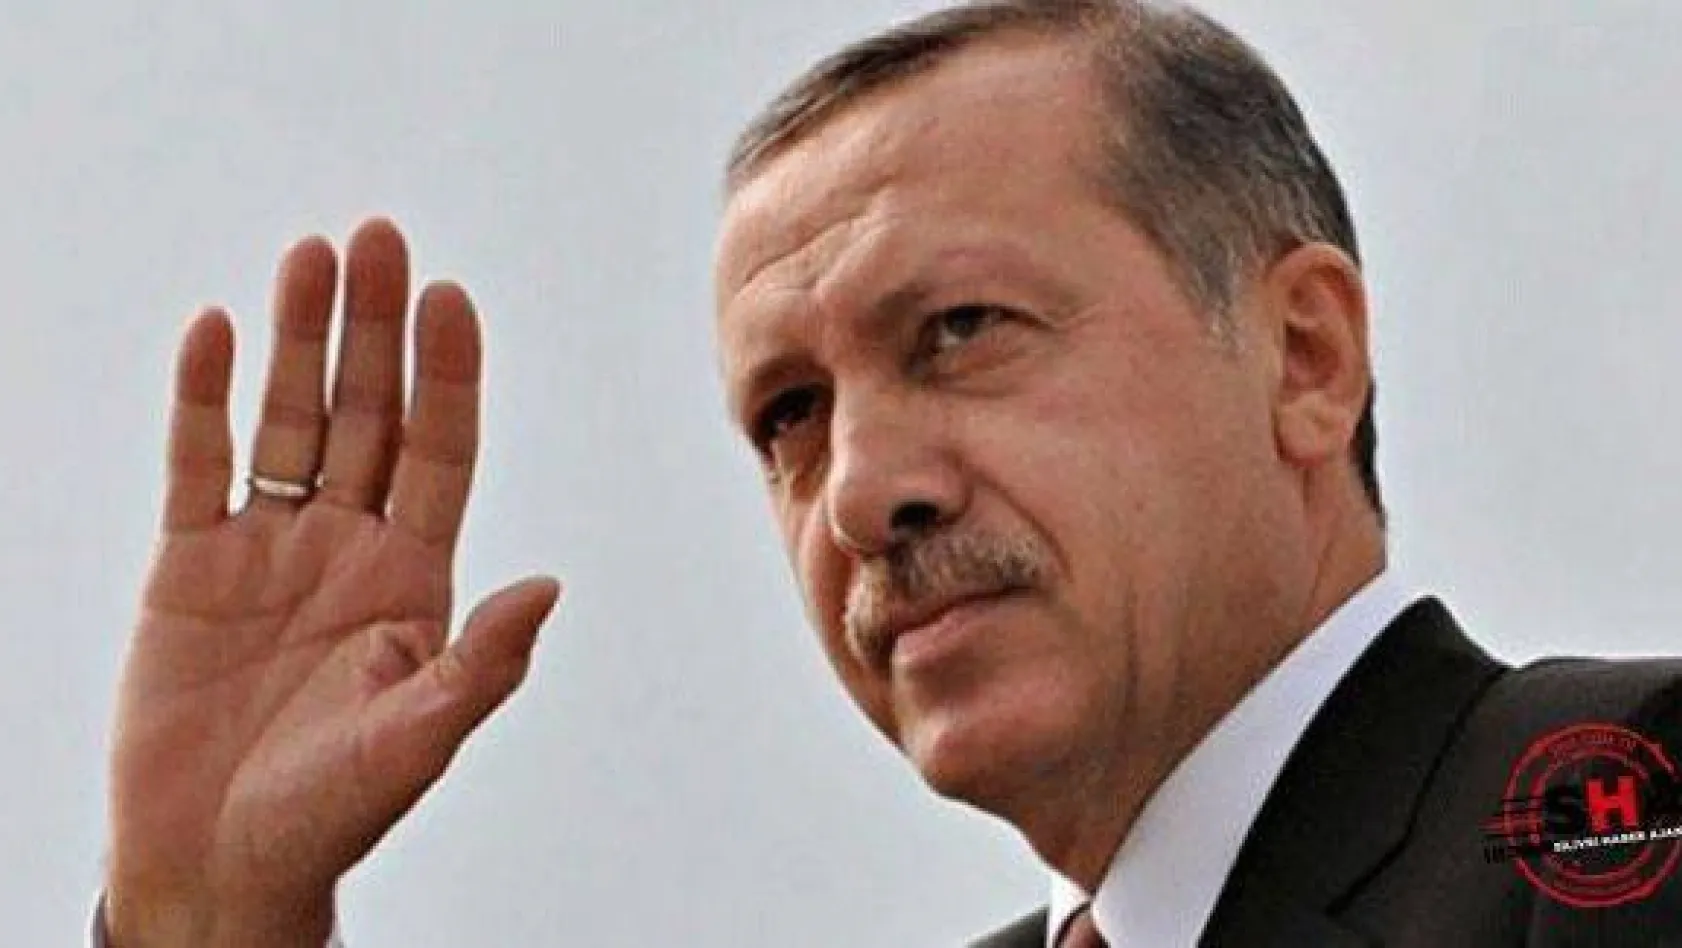 Erdoğan AK Parti'ye döndü